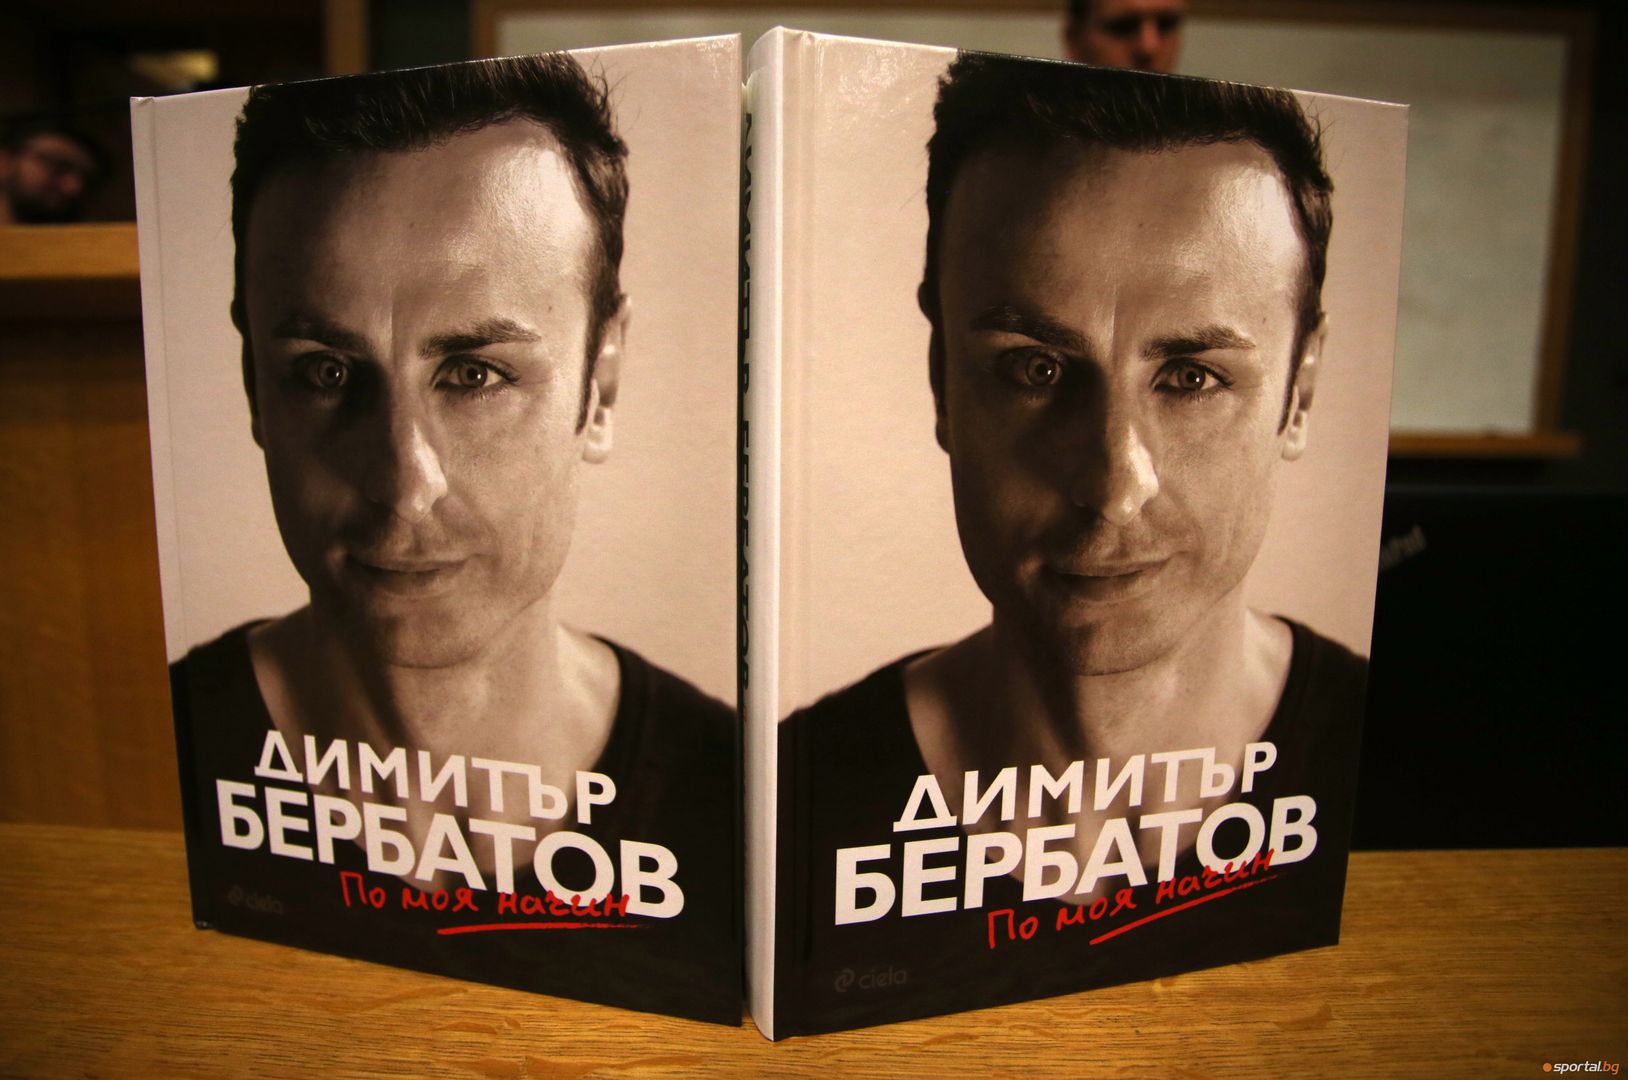 Димитър Бербатов представи книгата си в Софийския университет